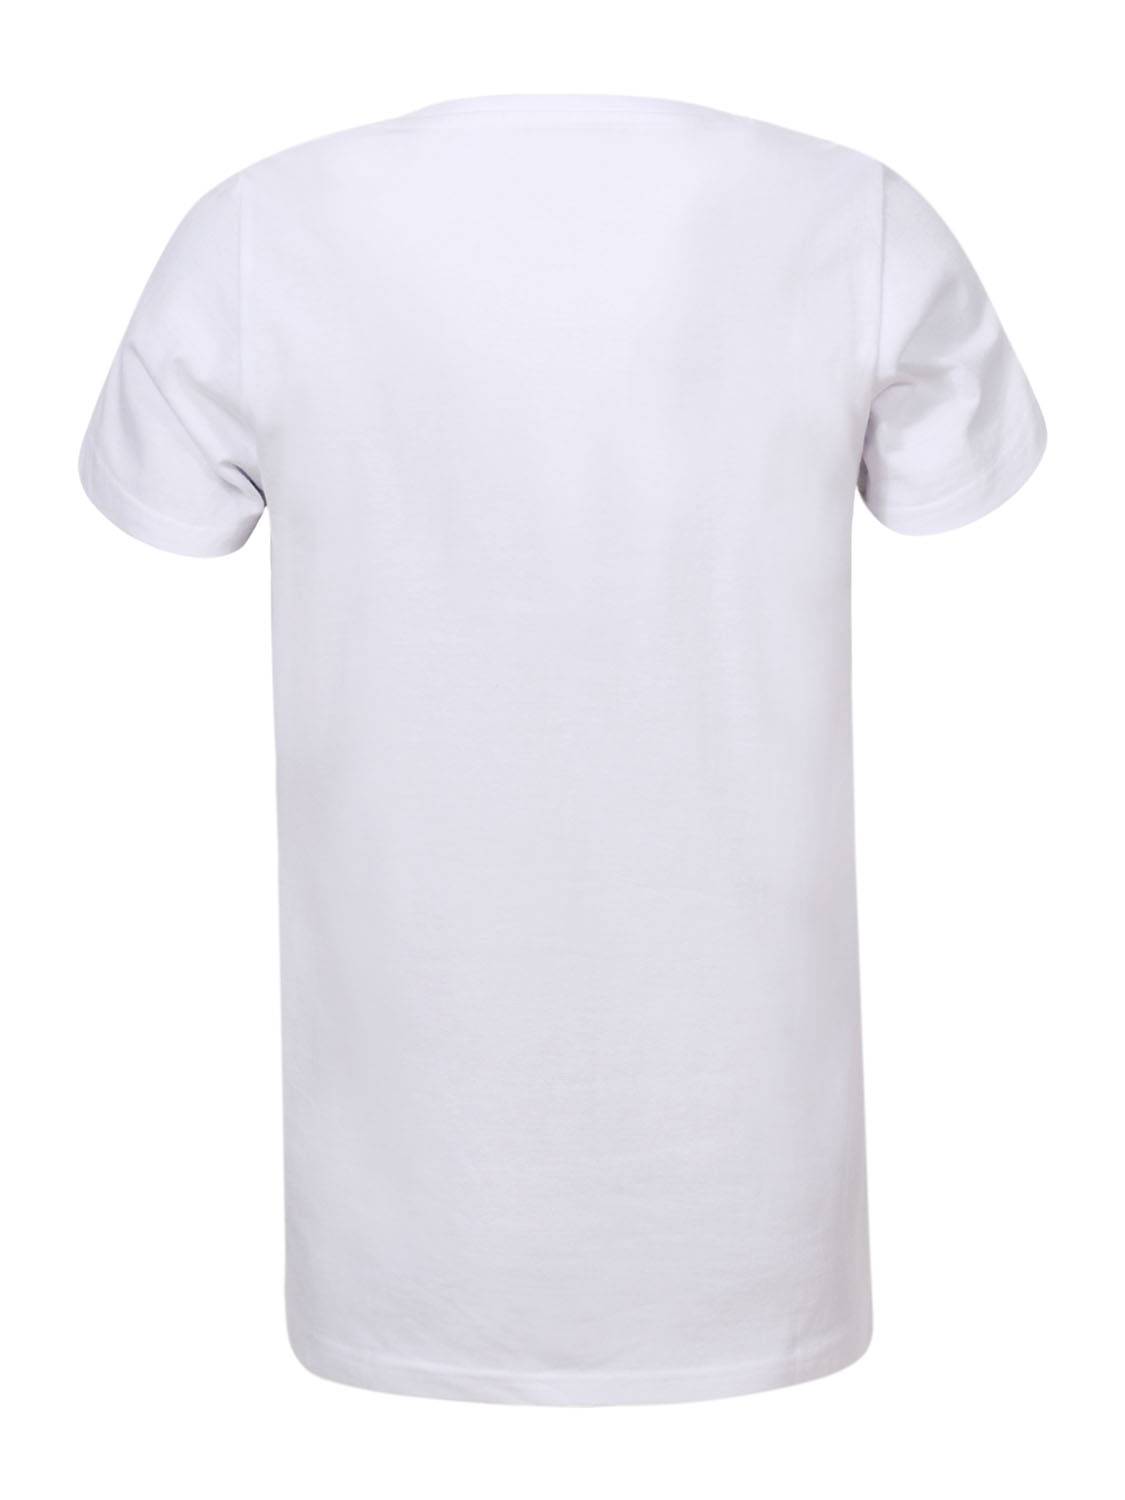 Chlapecké triko - Glo-Story BPO-7258, bílá Barva: Bílá, Velikost: 120